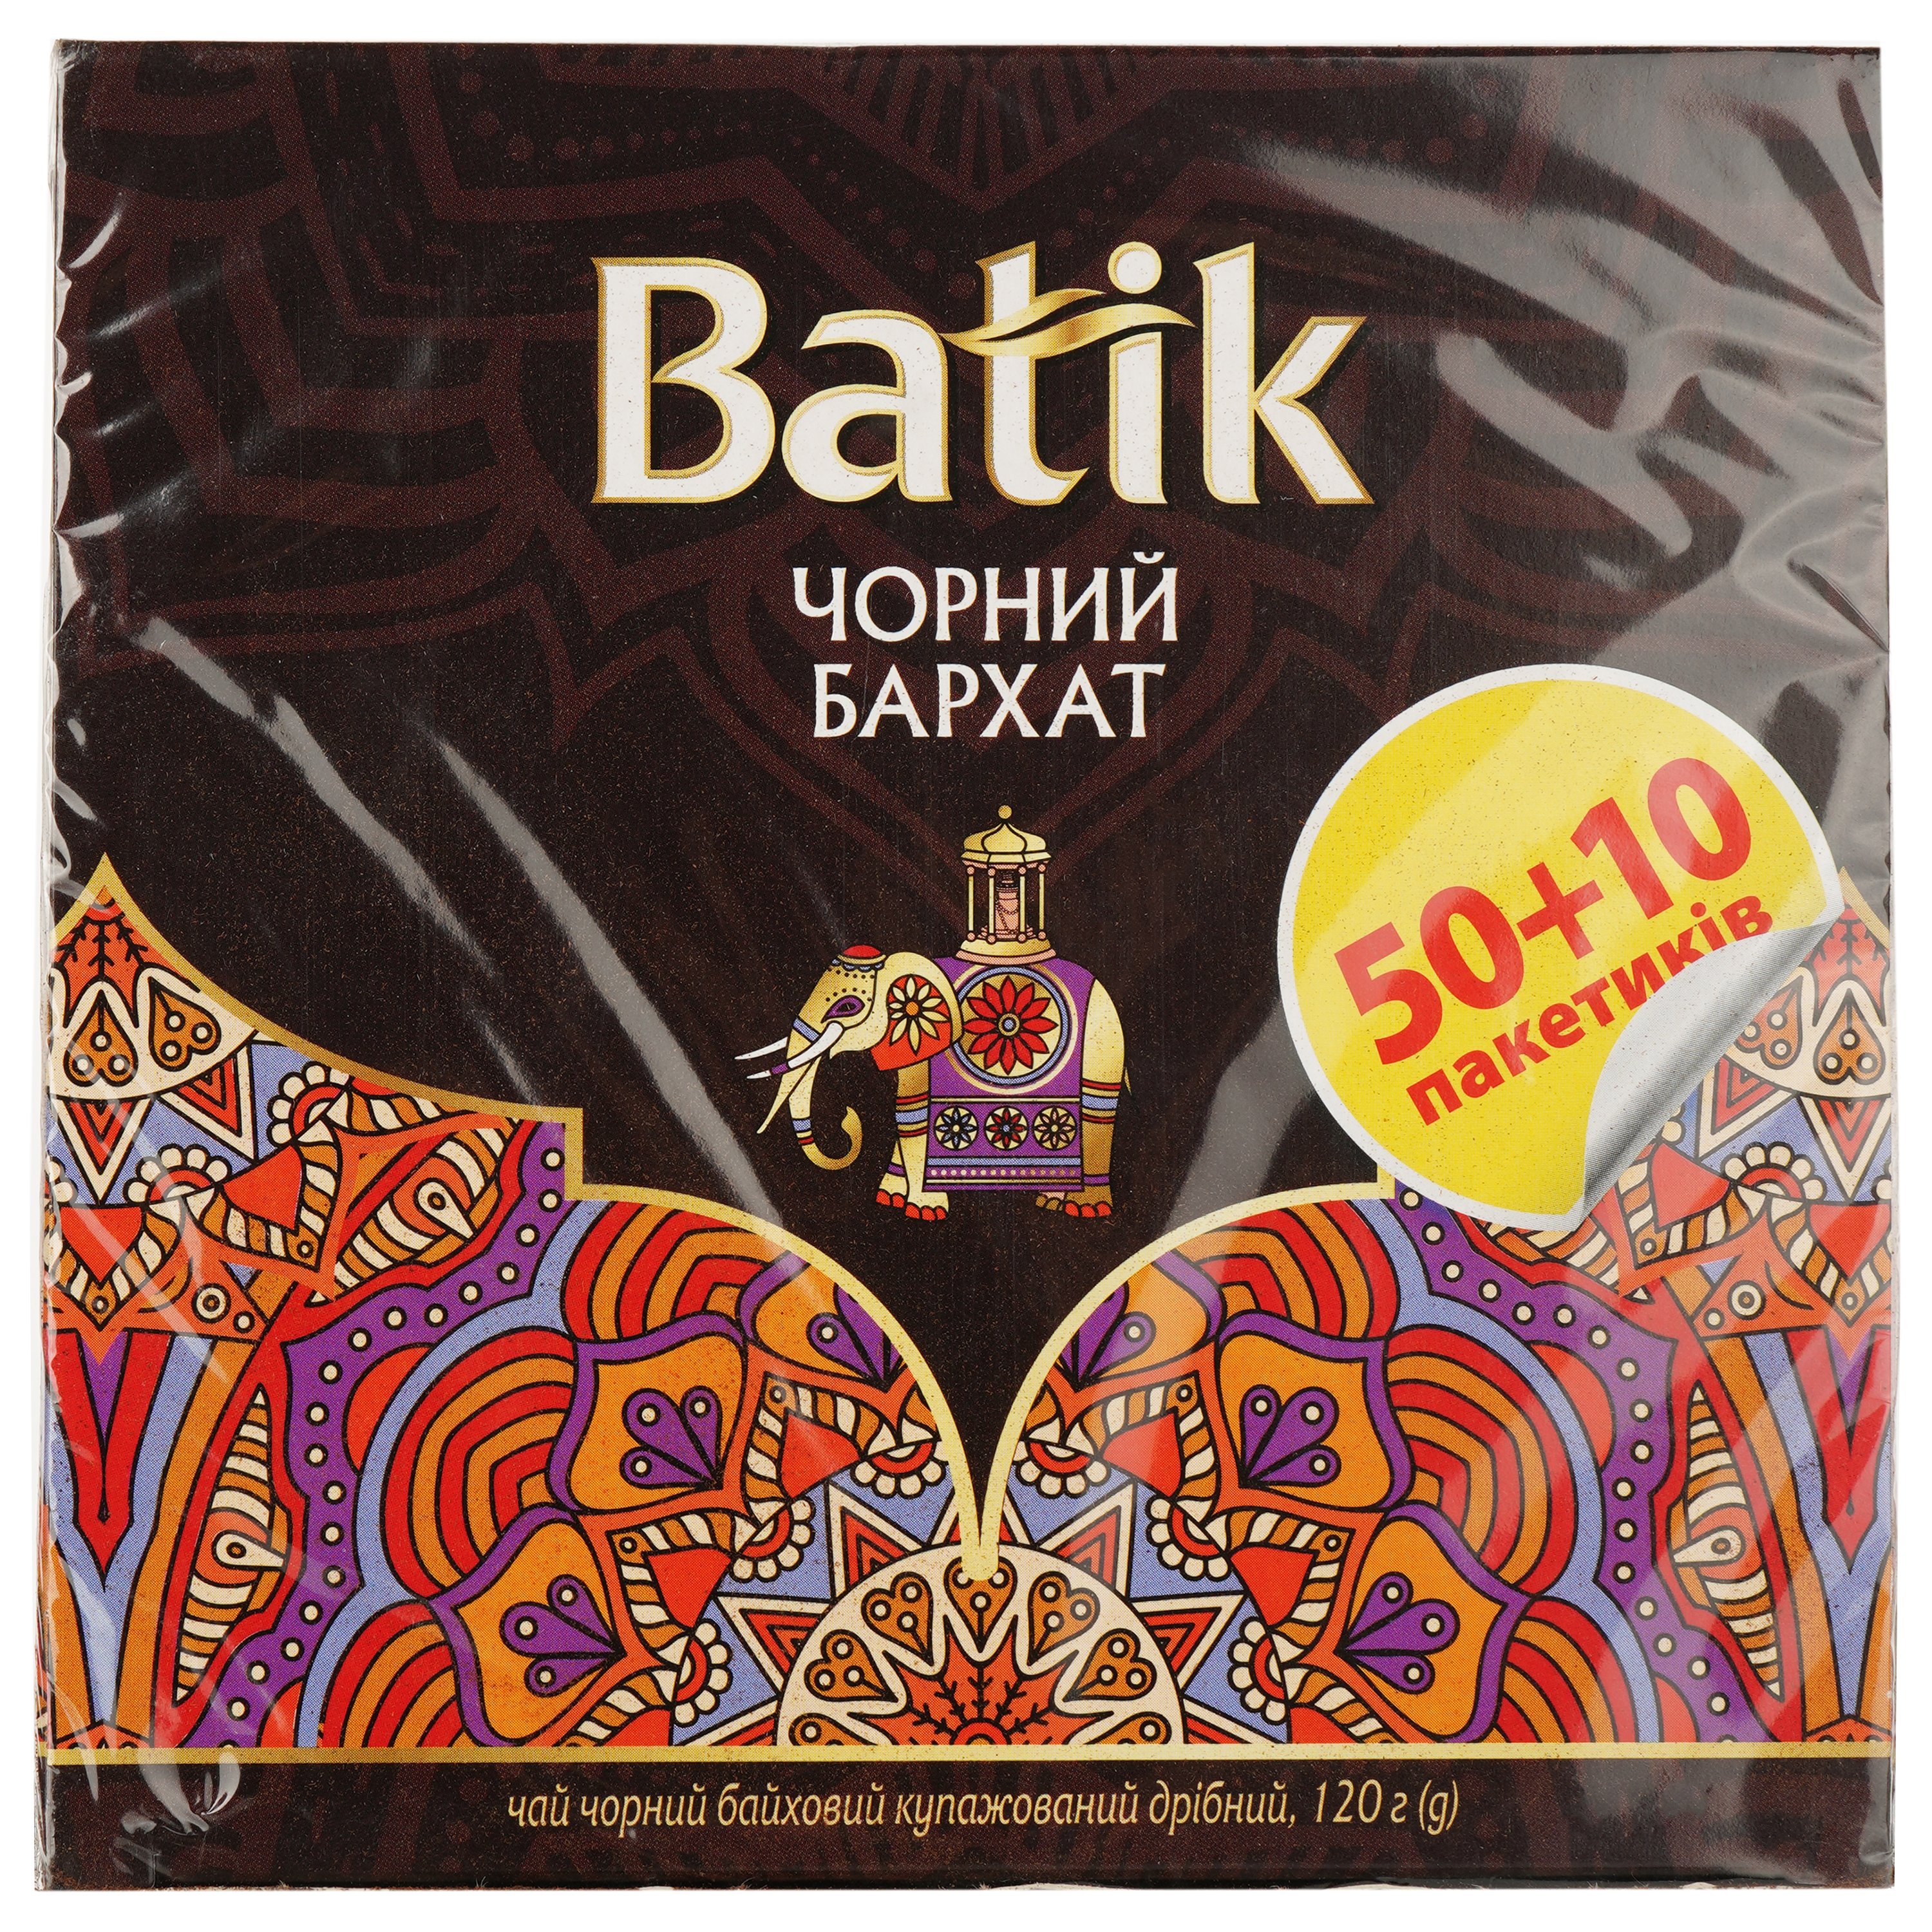 Чай черный Batik Черный бархат купажированный, мелкий, 50+10 шт. - фото 1